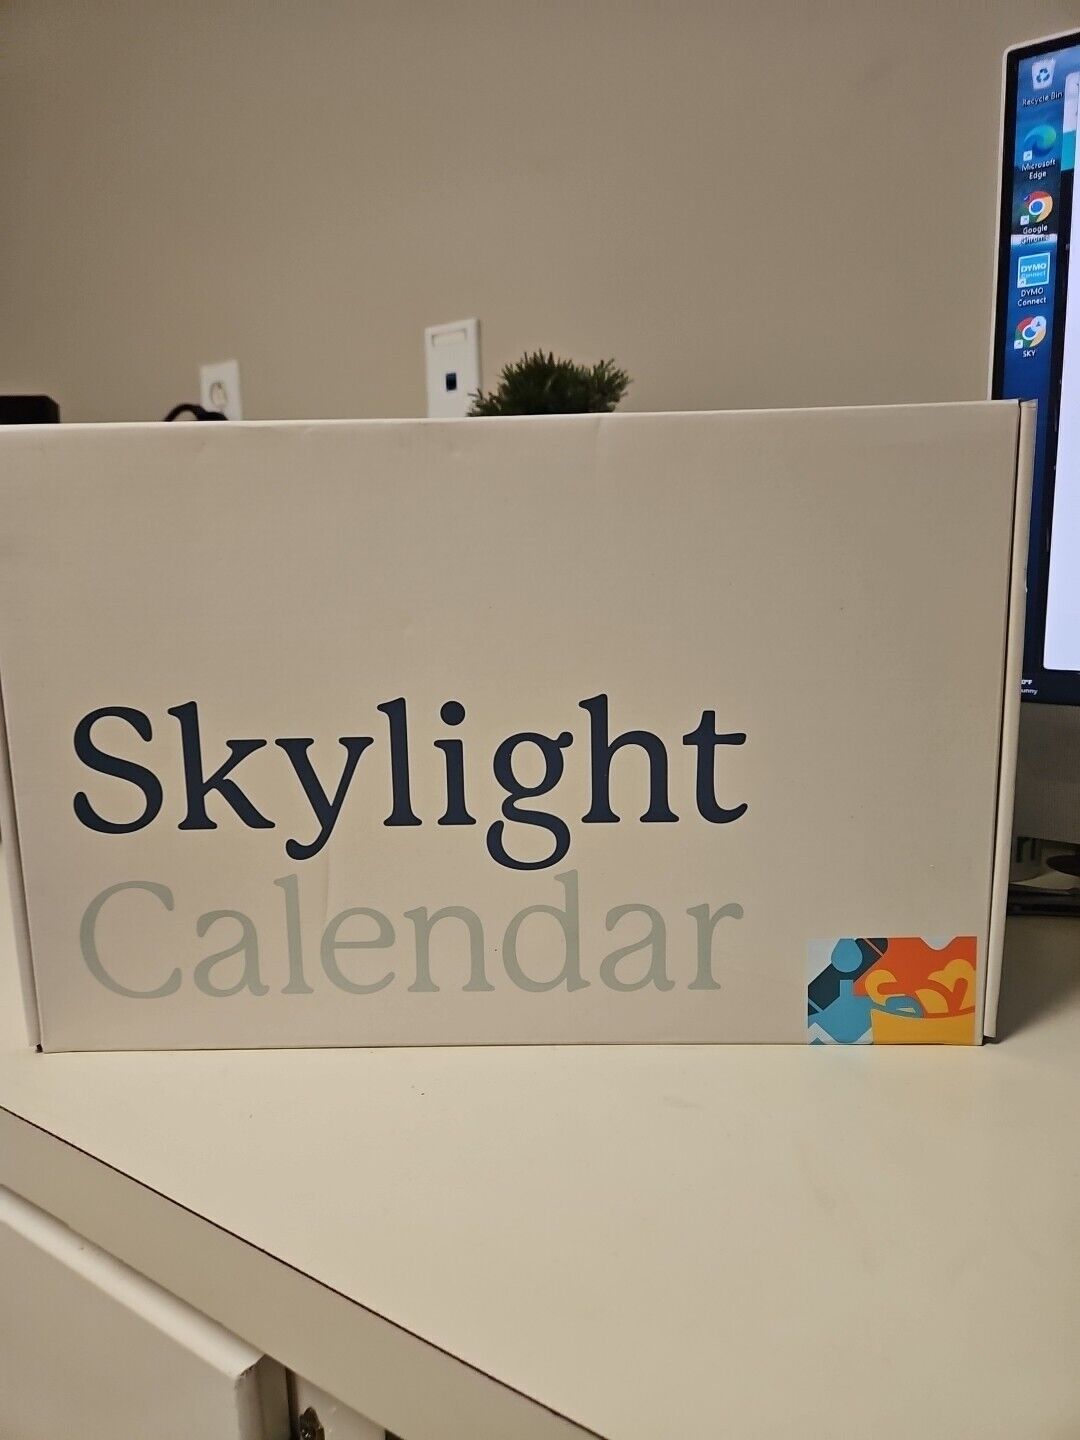 Skylight Calendar: 15 Inch Digital Calendar & Chore Chart, Smart Touchscreen bw3